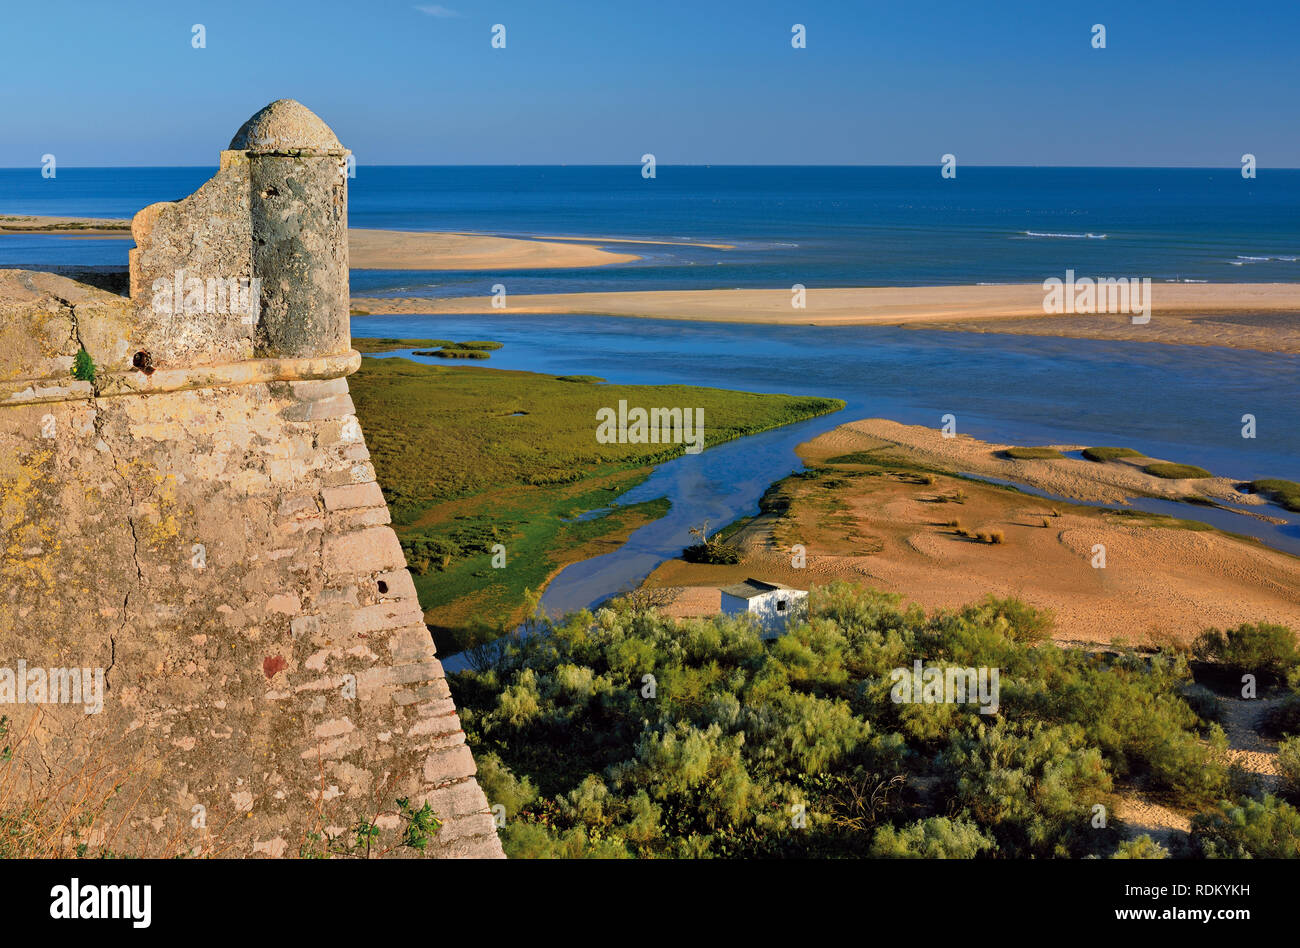 Wachturm von medieveal Festung mit Blick auf die Küstenlandschaft mit vorgelagerten Inseln und Lagunen Stockfoto